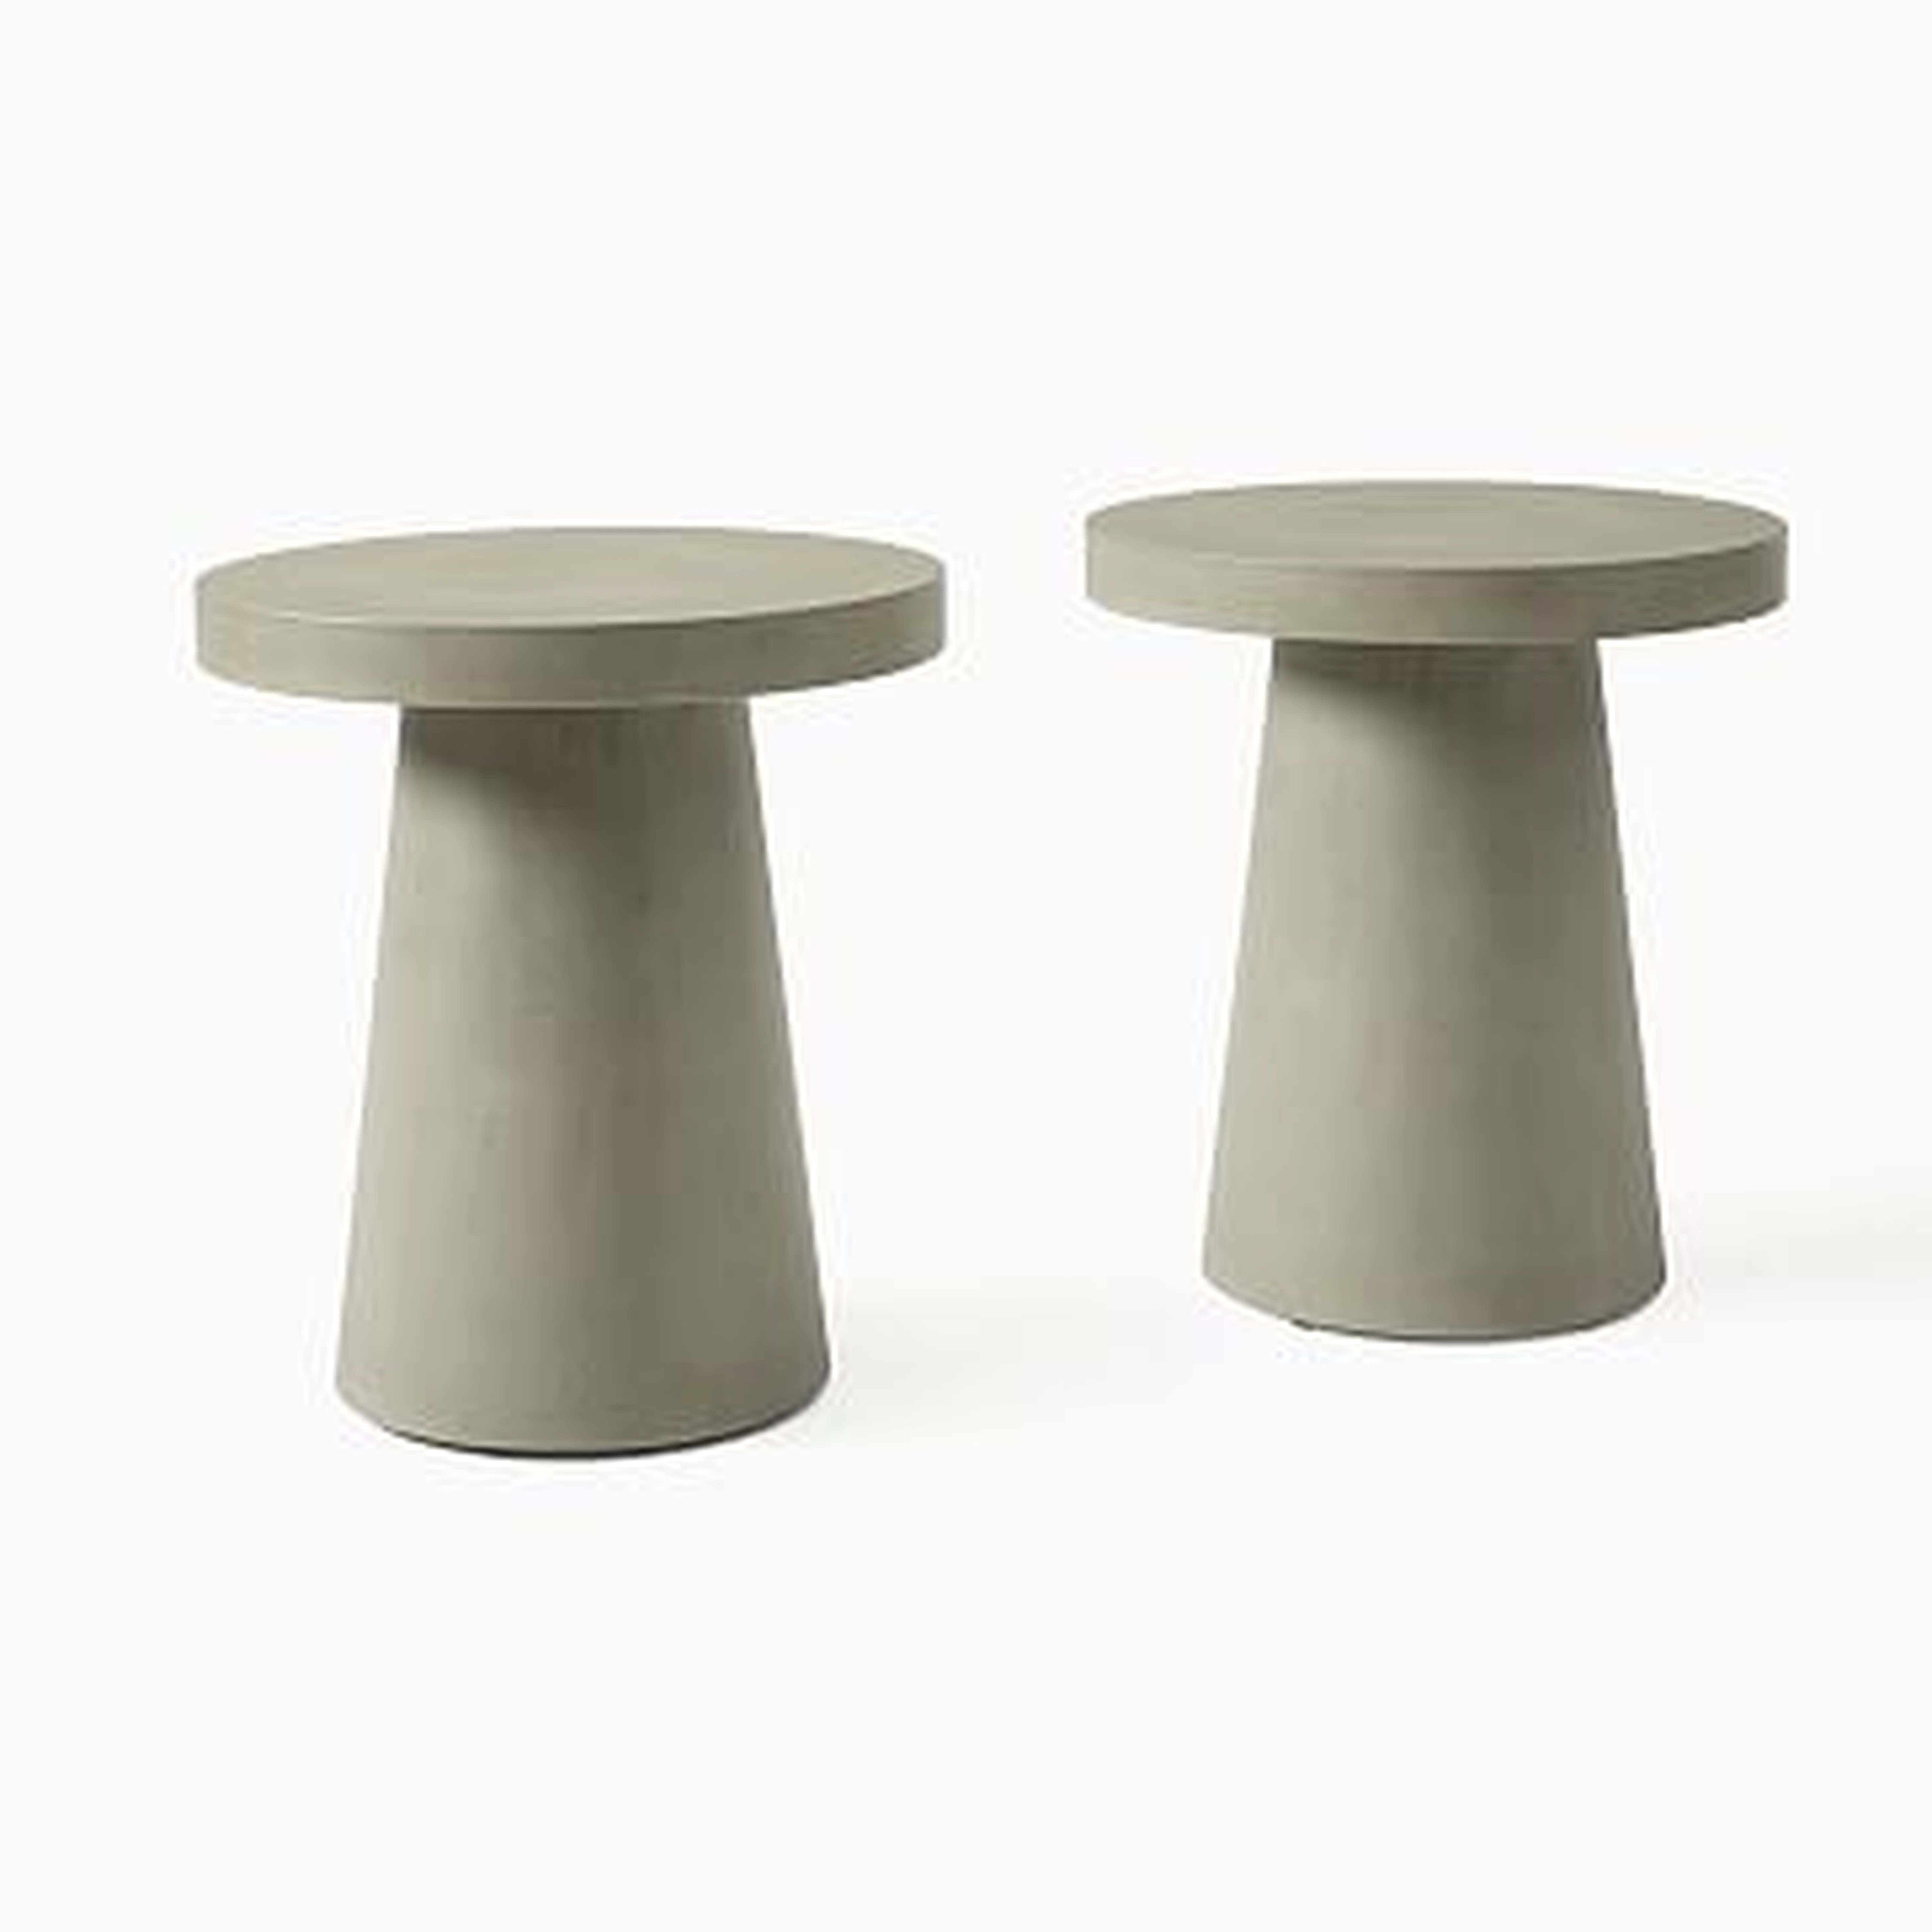 Concrete Pedestal Side Table, Gray Concrete, Set of 2 - West Elm